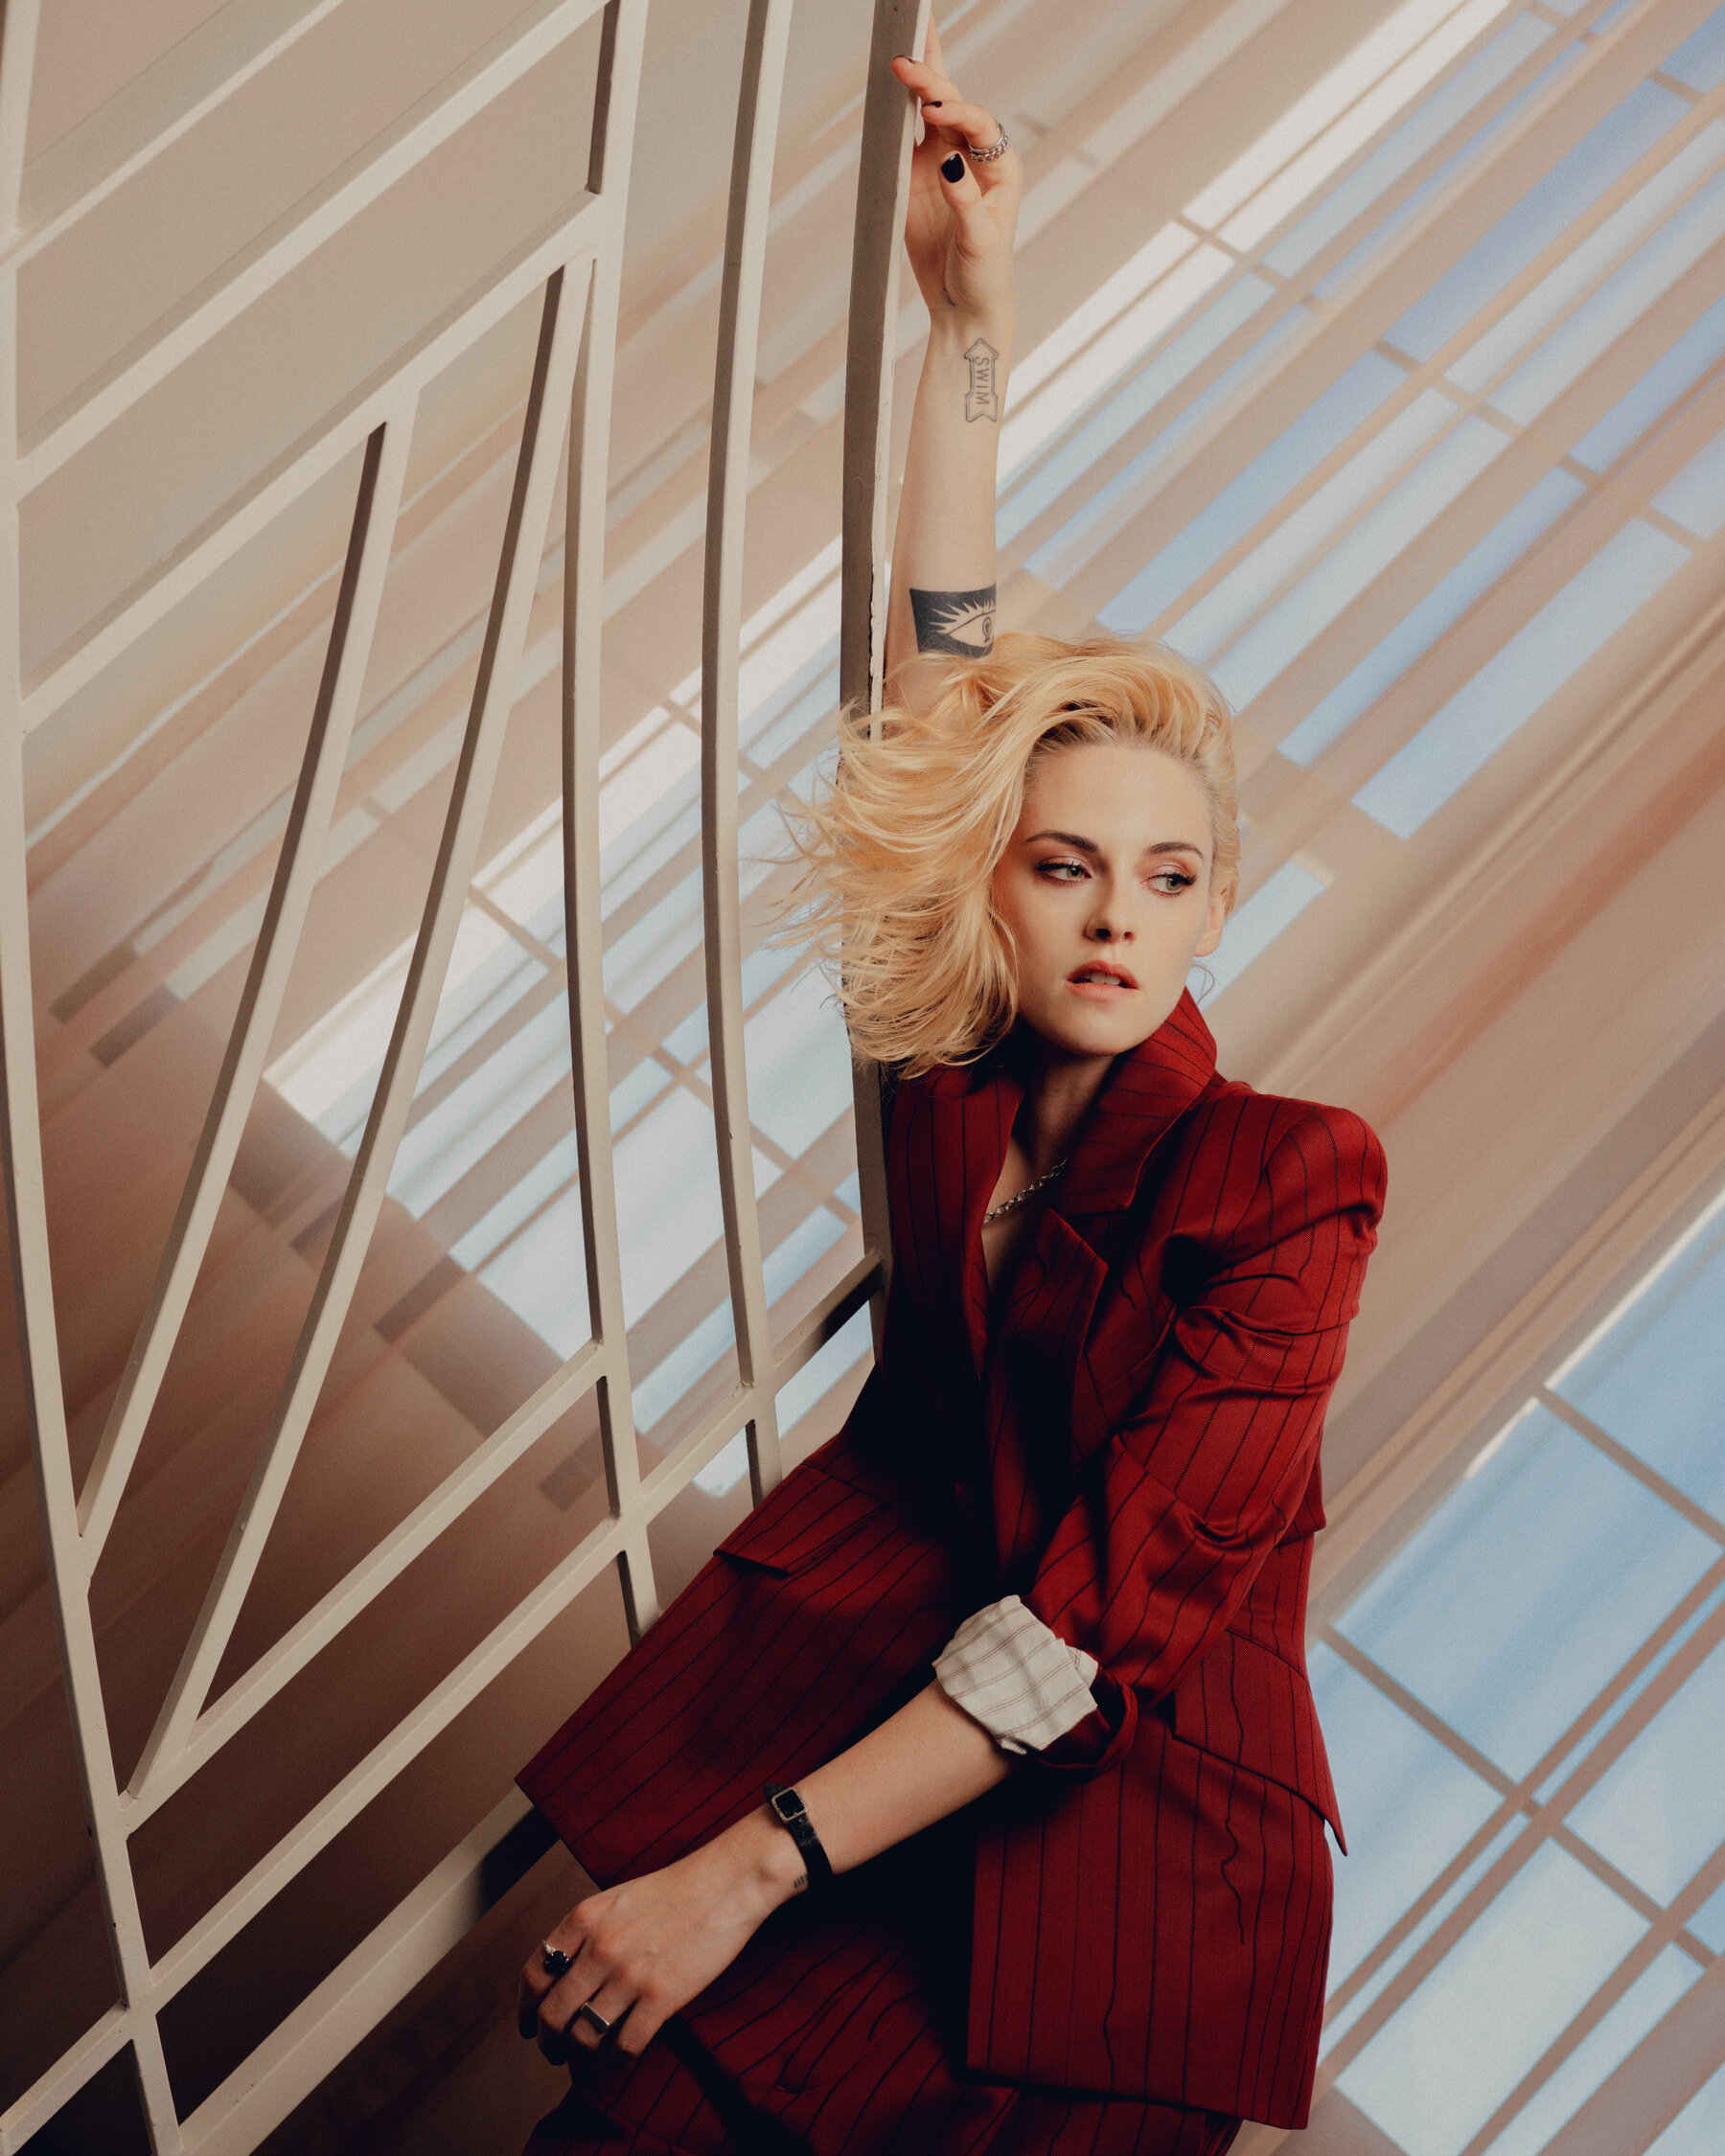 Kristen Stewart Actress 2021 Wallpapers